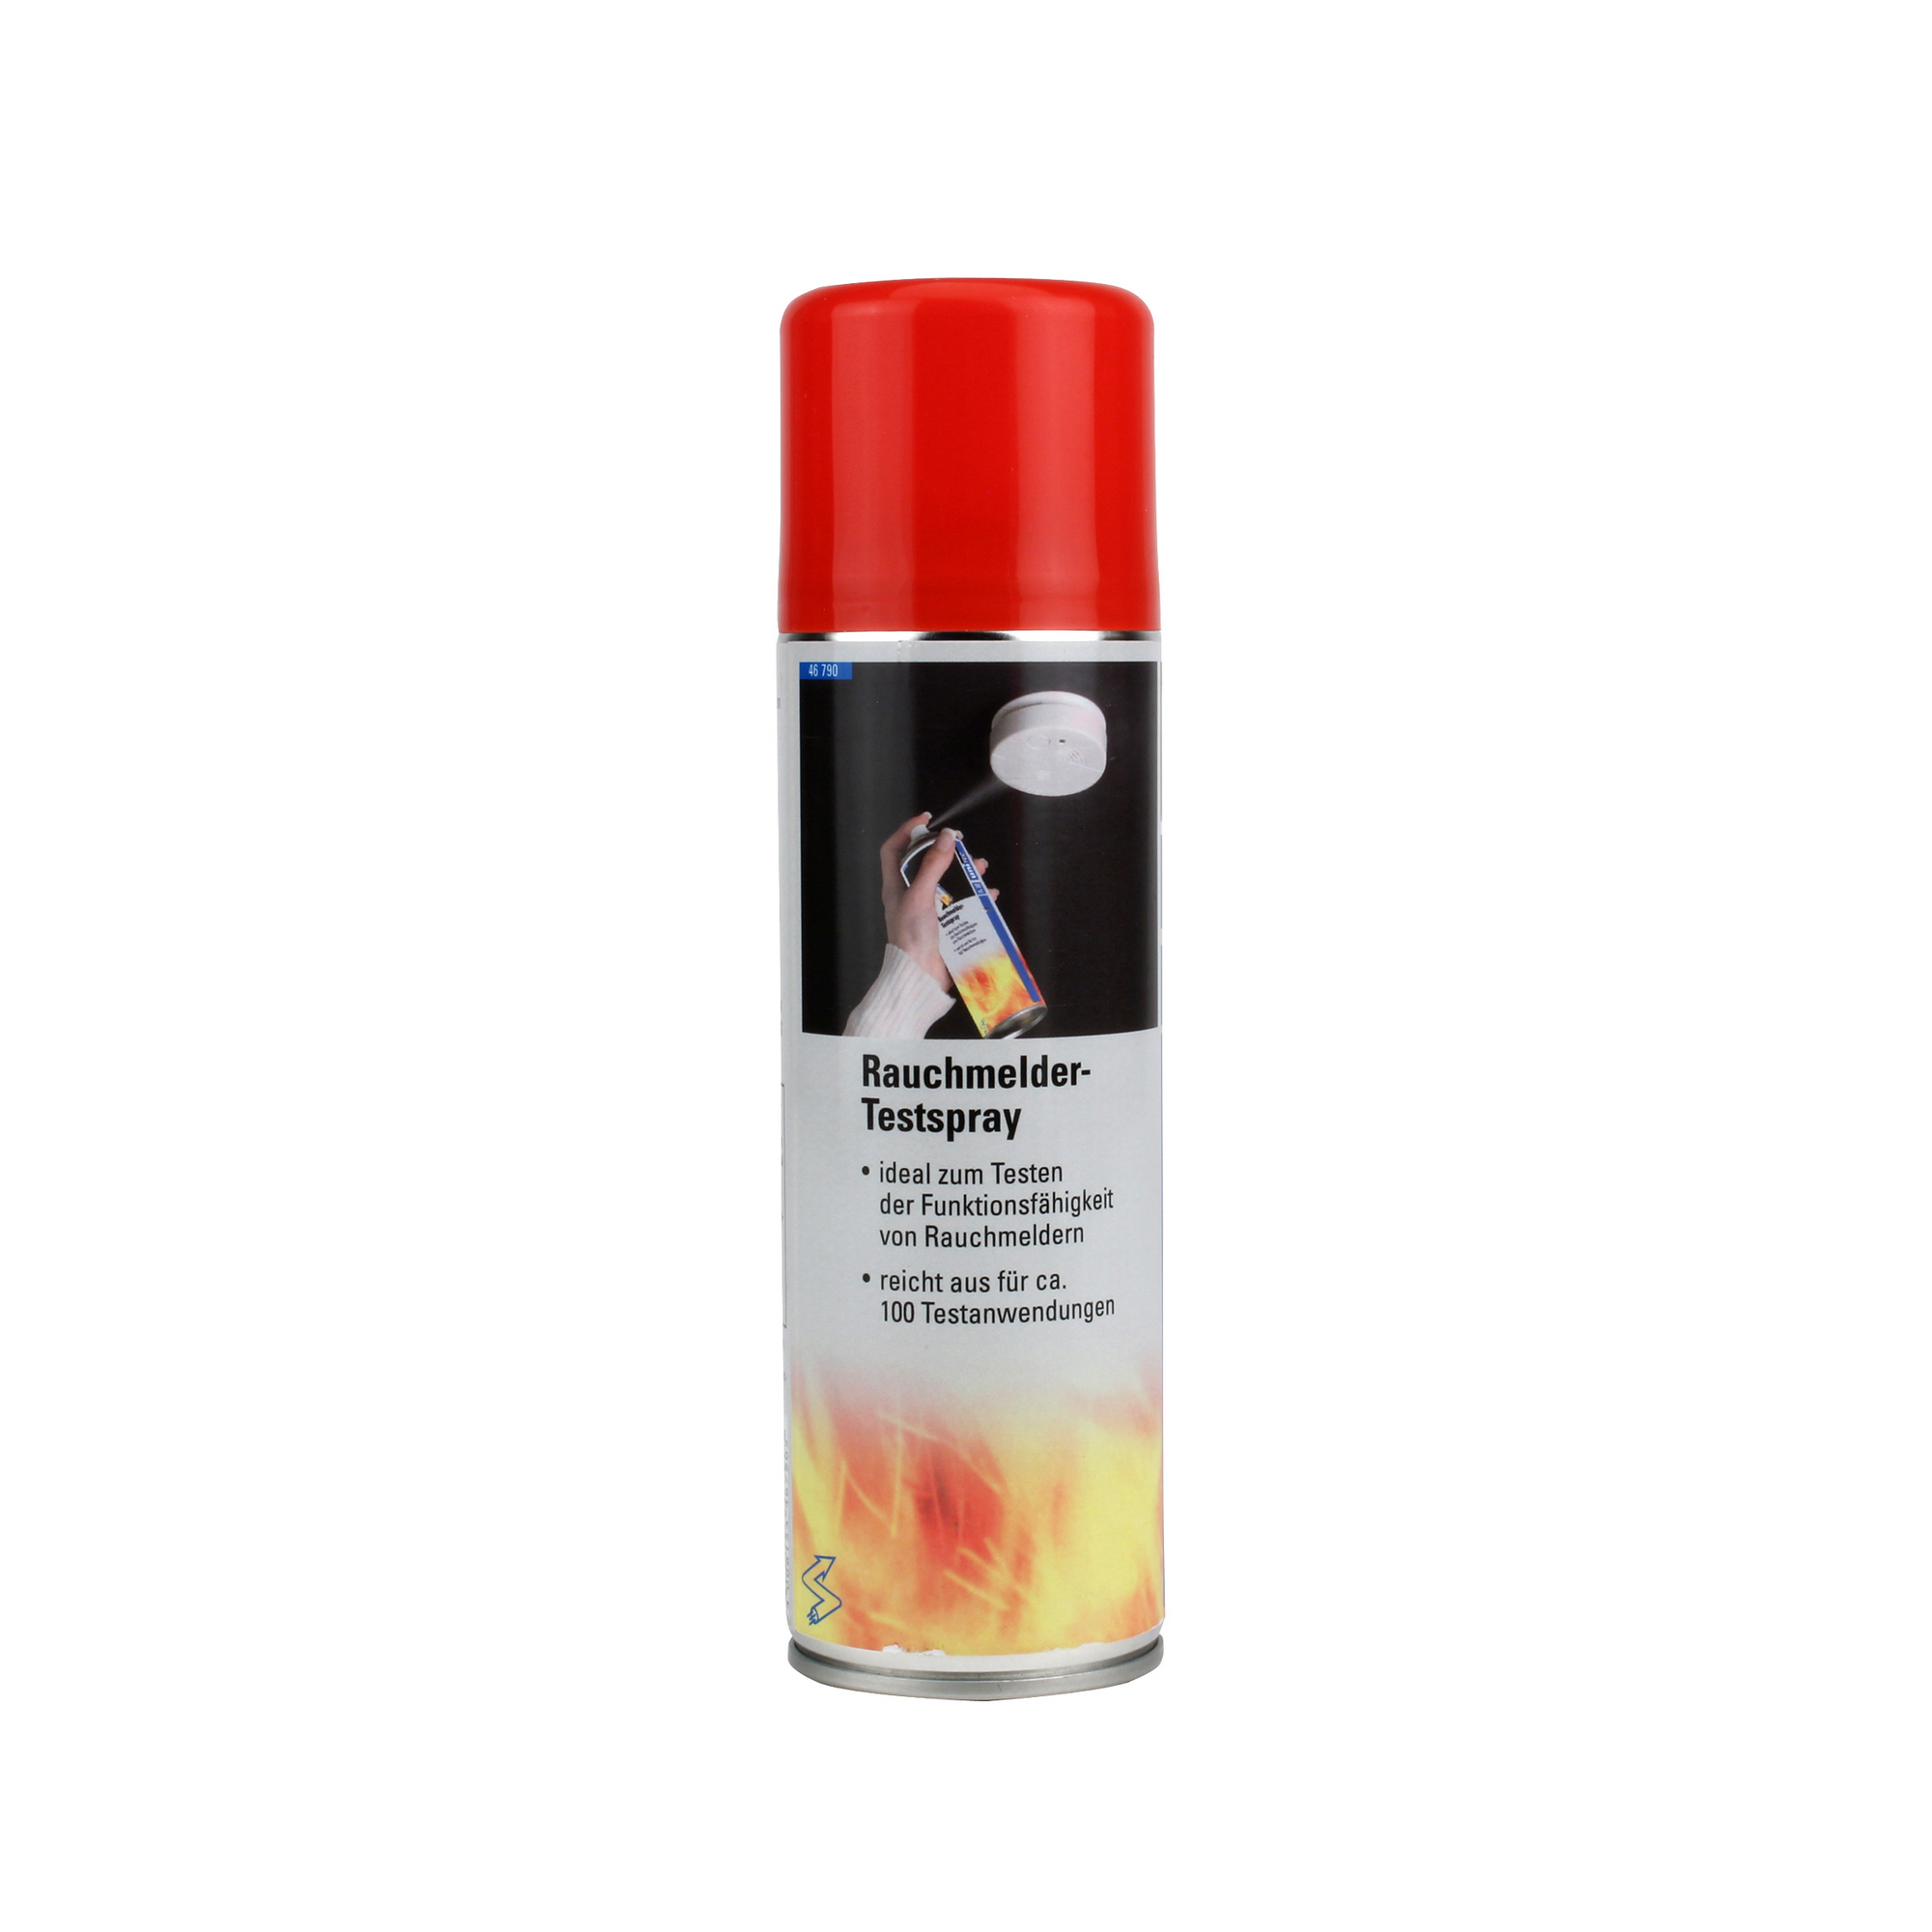 Rauchmelder-Testspray 300 ml + product picture